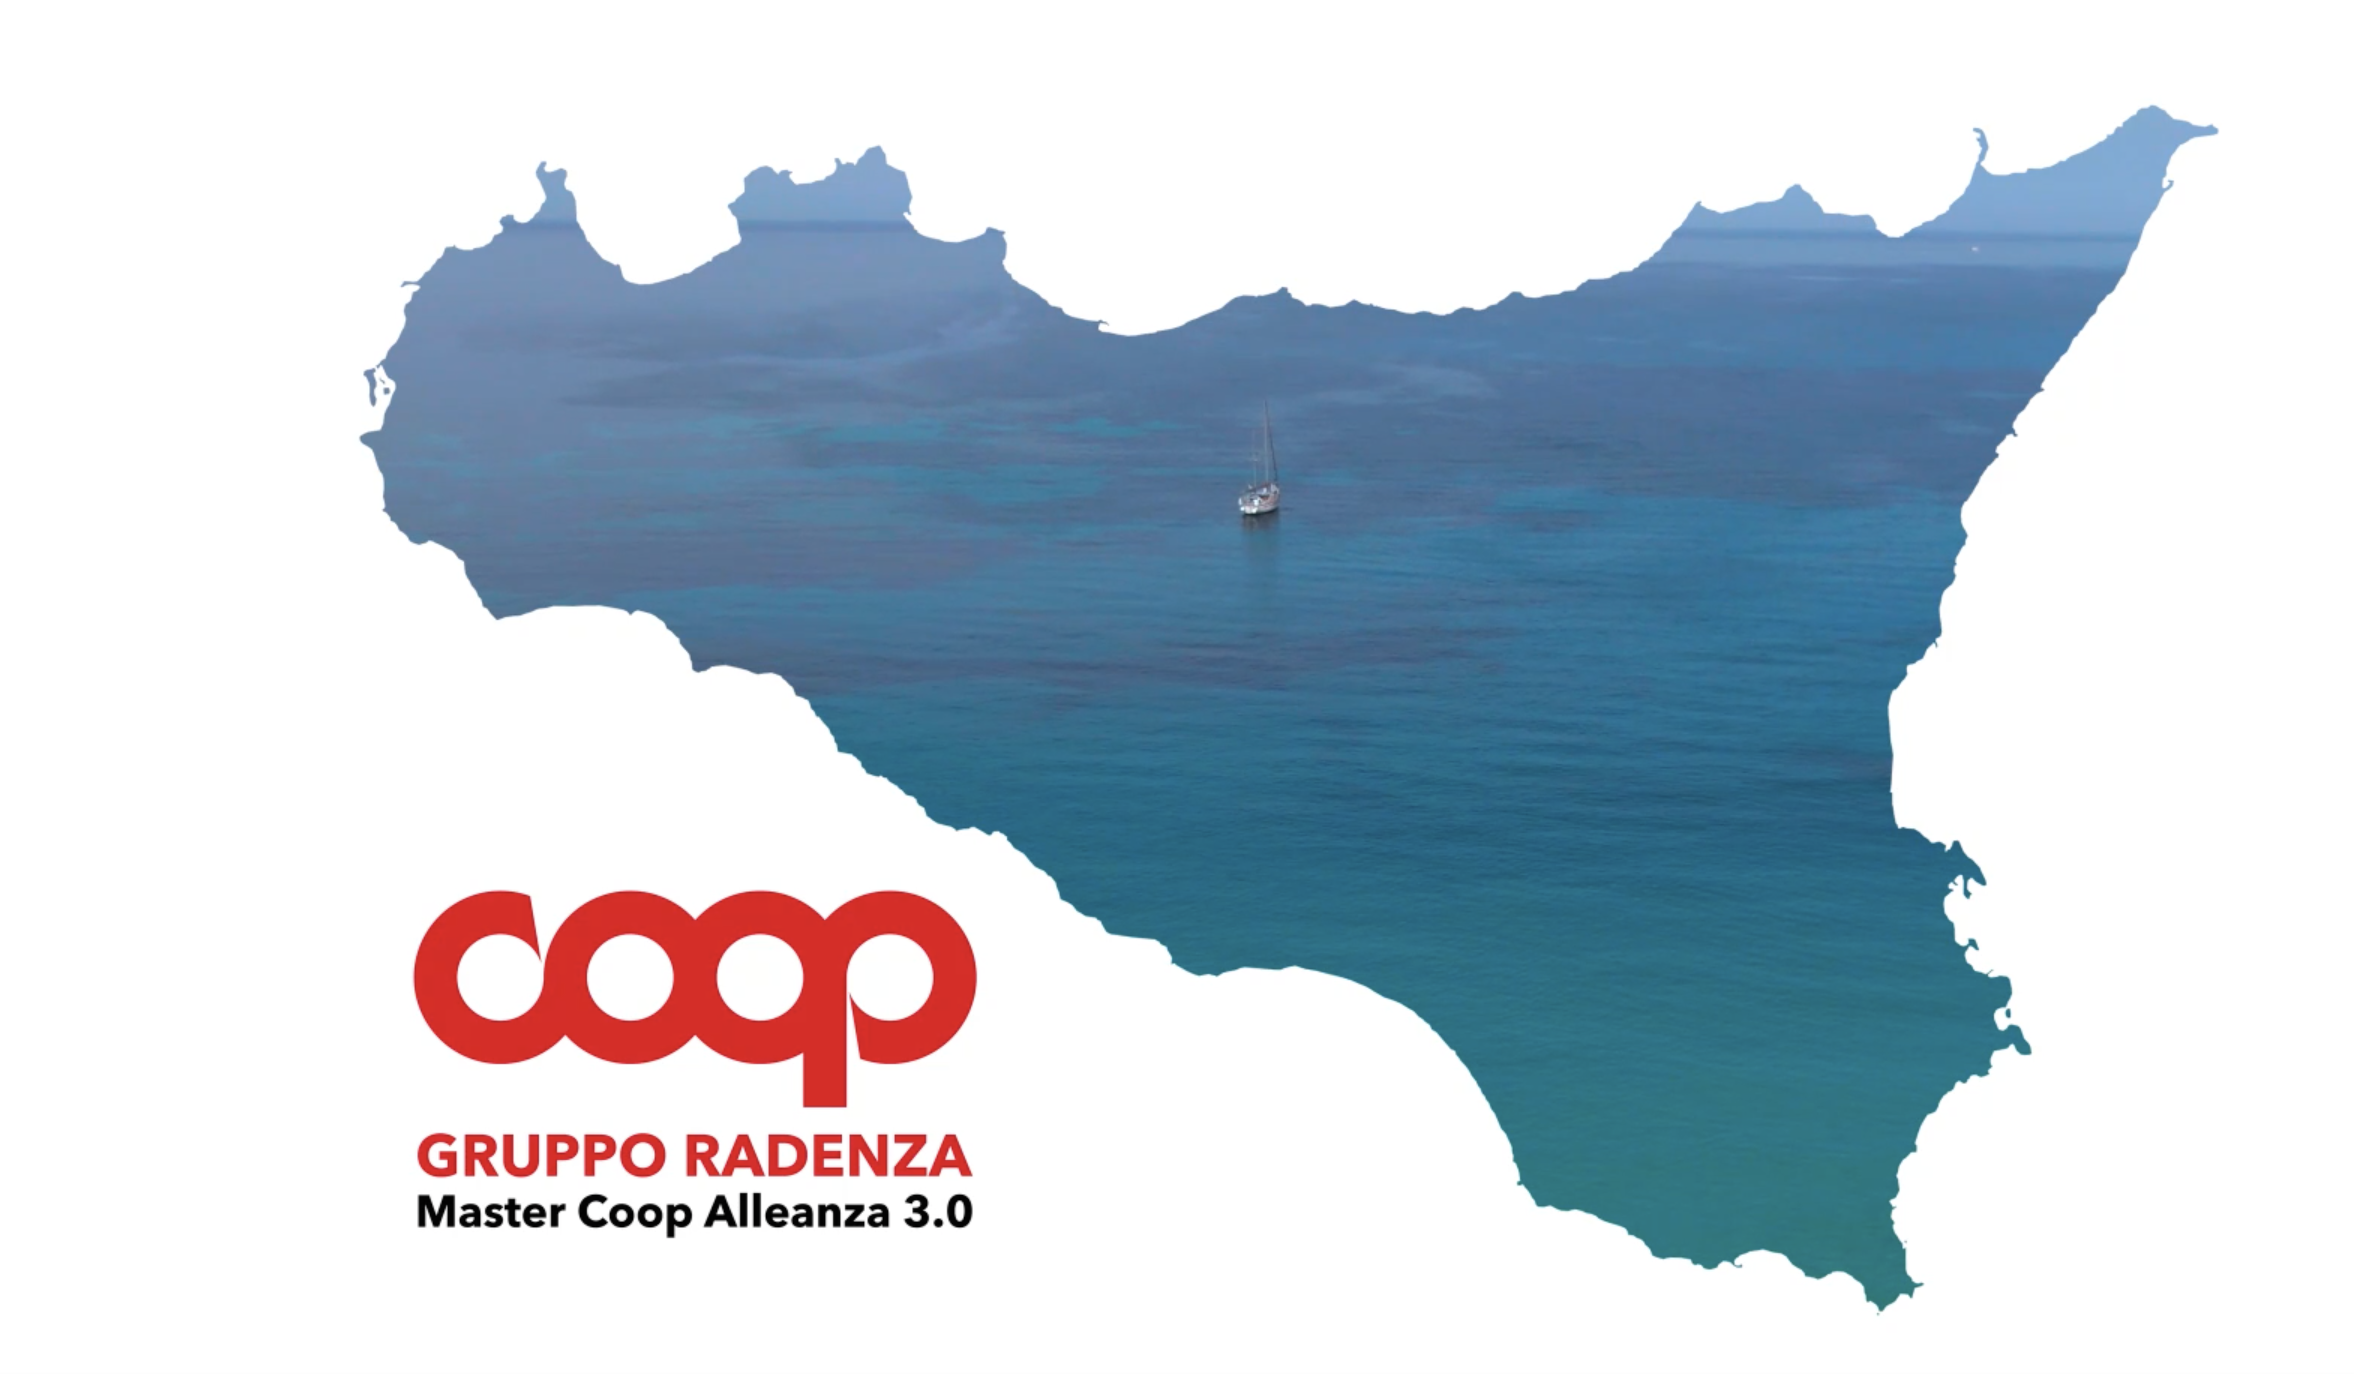 La Sicilia, grande protagonista nel nuovo spot di Coop Gruppo Radenza